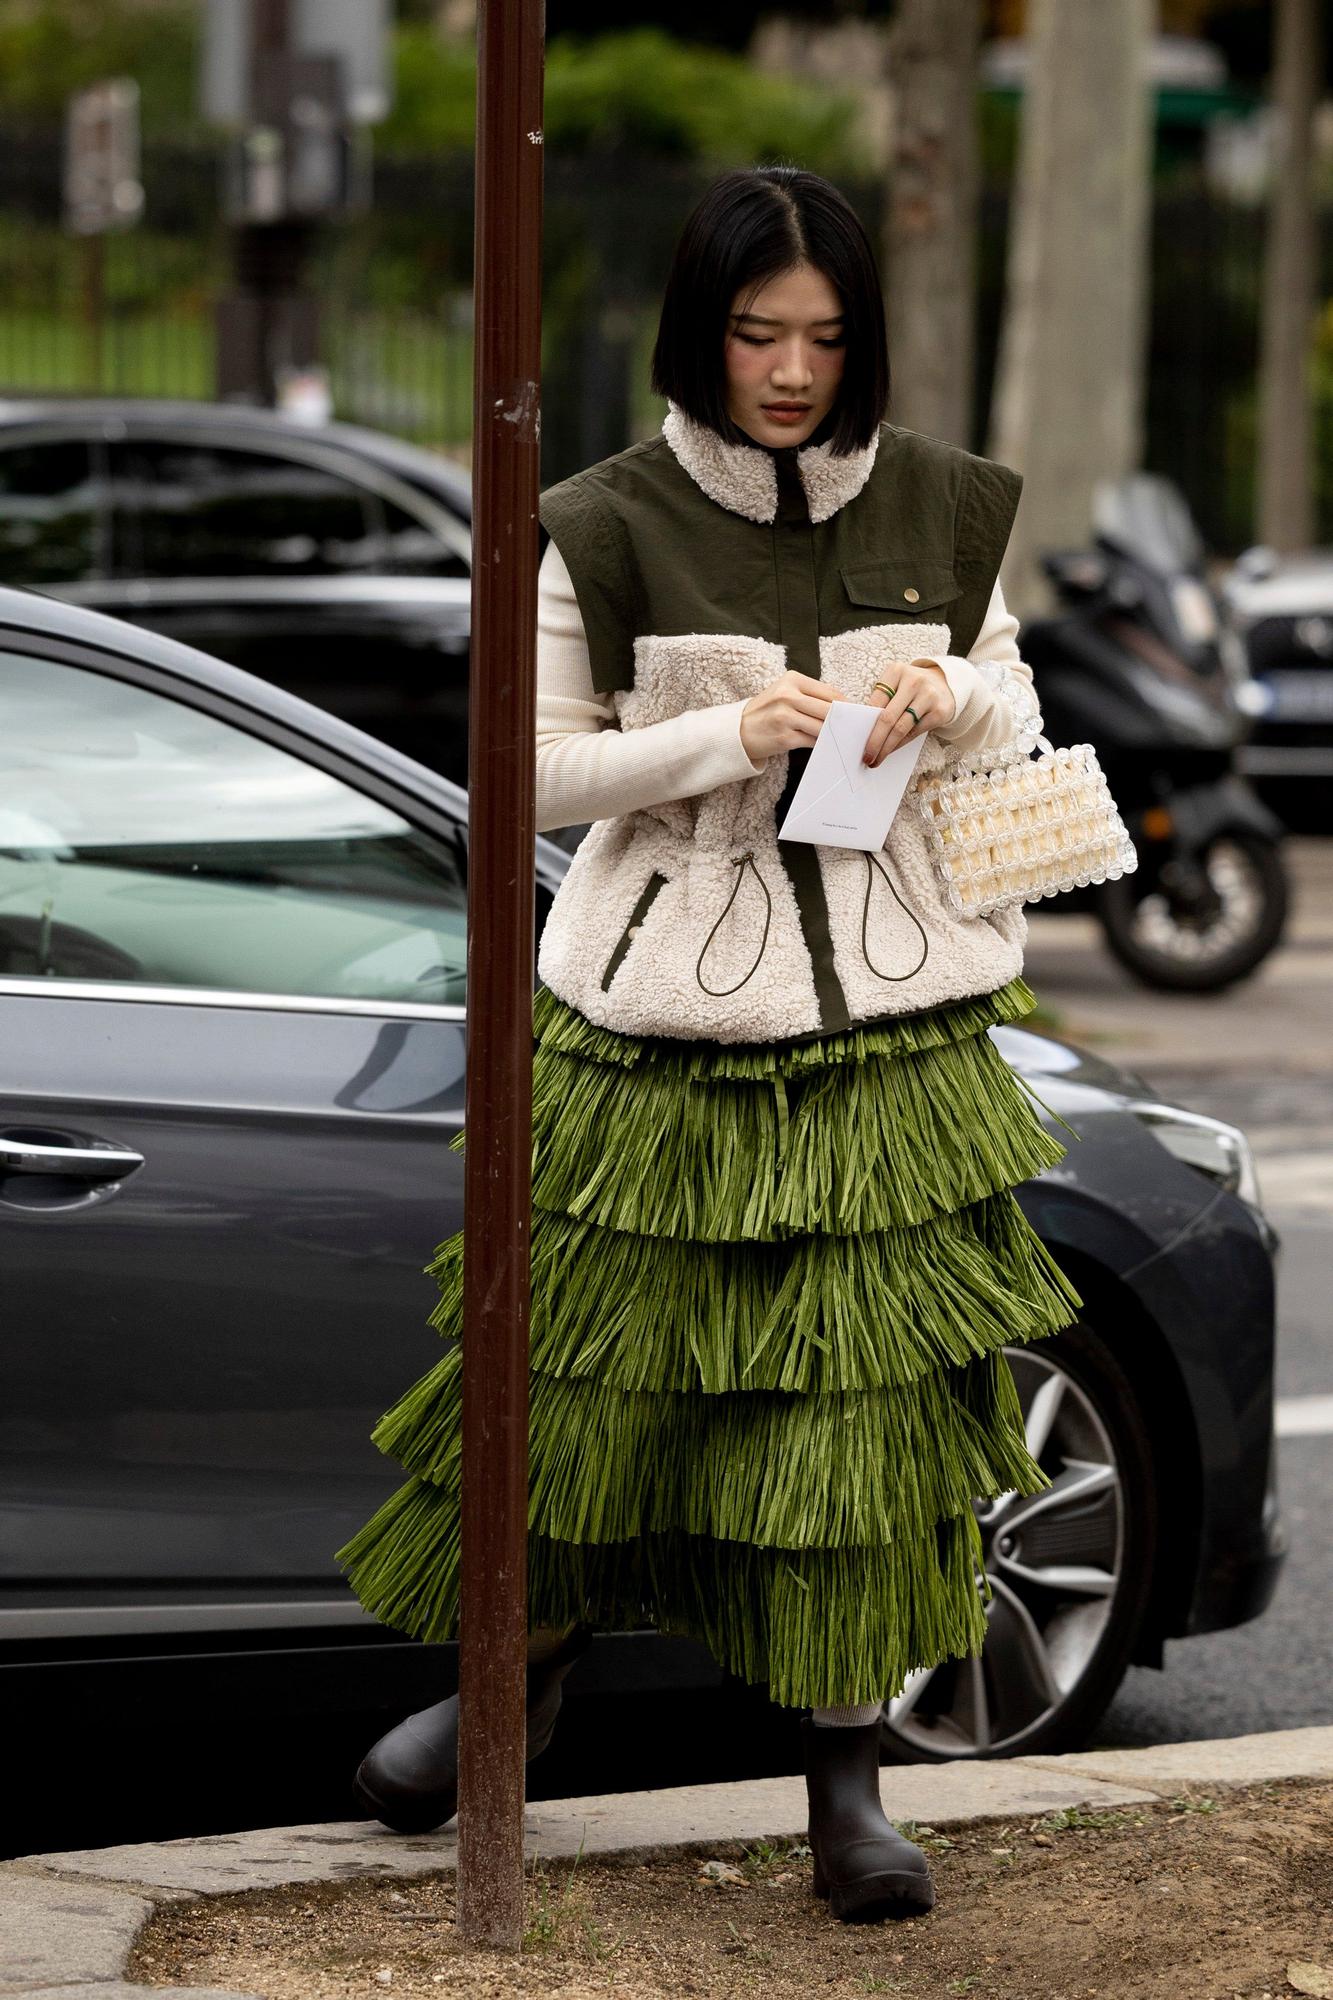 El chaleco de borreguito de Zara que se ha hecho viral que llevan 'influencers' de los 20 a los 60 años - Woman